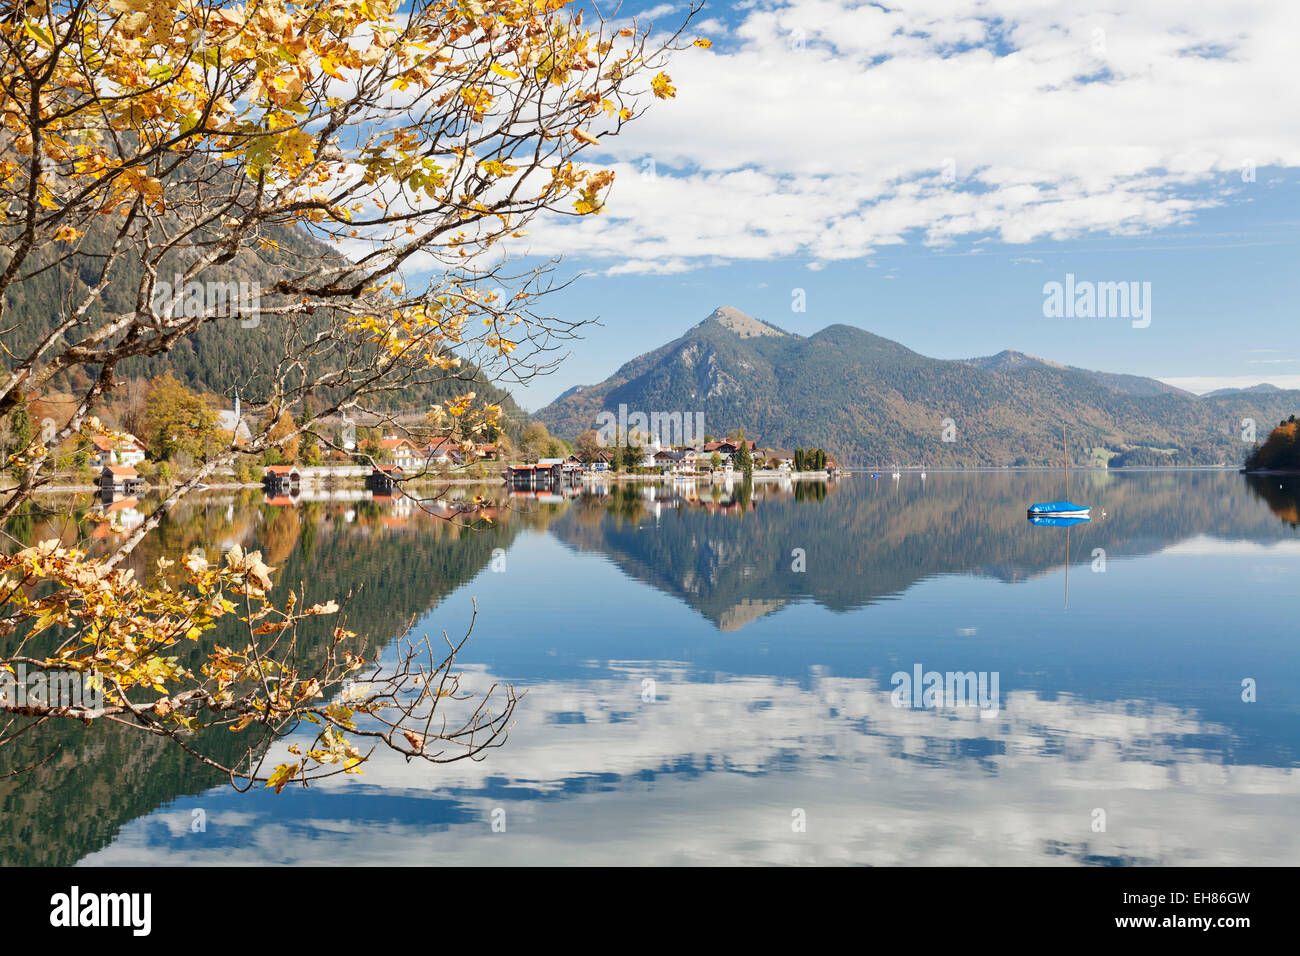 Dorf Walchensee und Jochberg Berg reflektiert im Walchensee-See im Herbst, Bayerische Alpen, Upper Bavaria, Bavaria, Germany Stockfoto